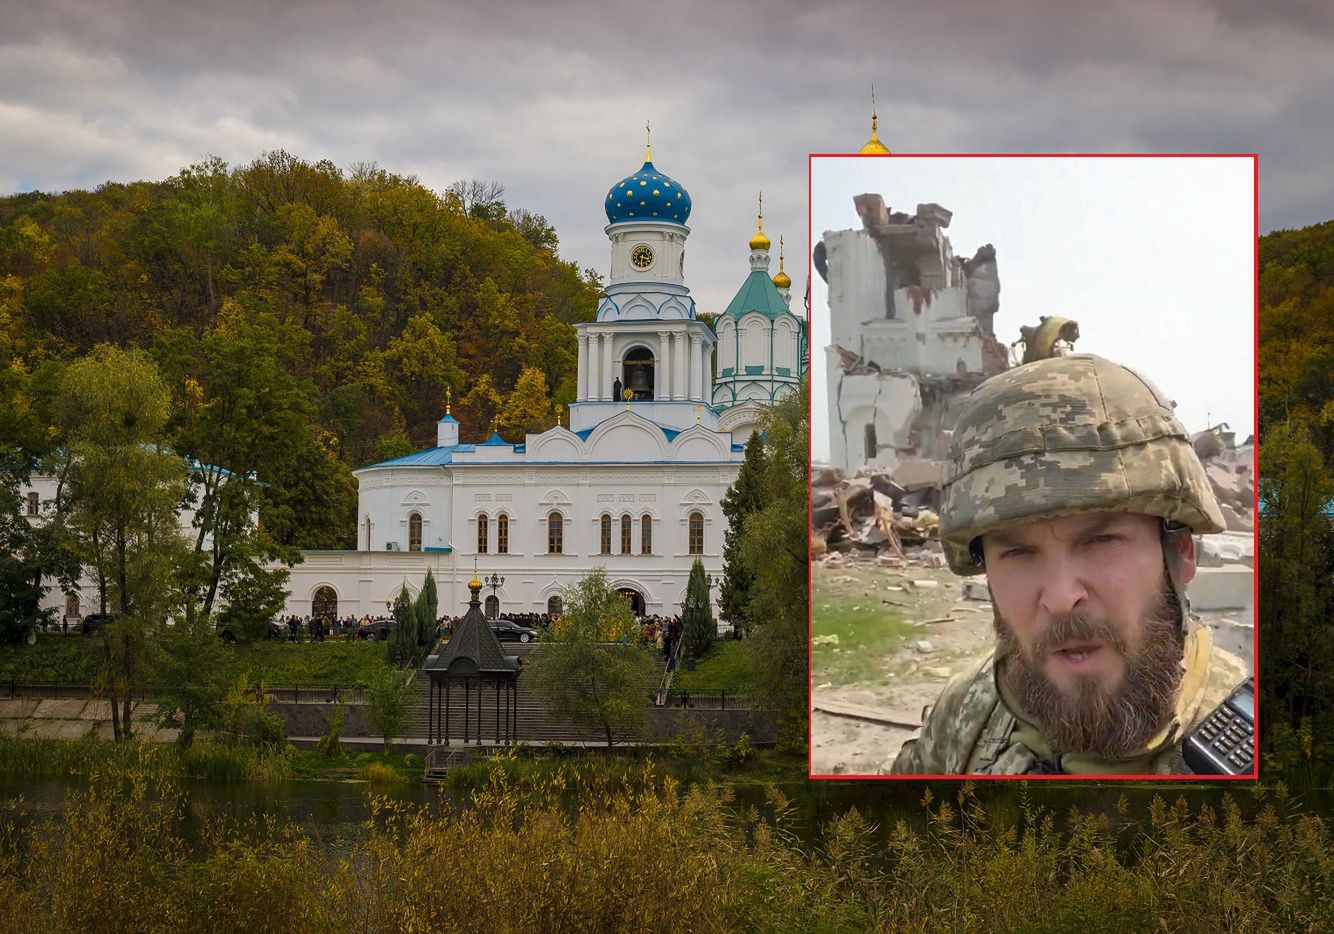 Klejnot Ukrainy zniszczony. Zobacz to miejsce po przejściu Rosjan